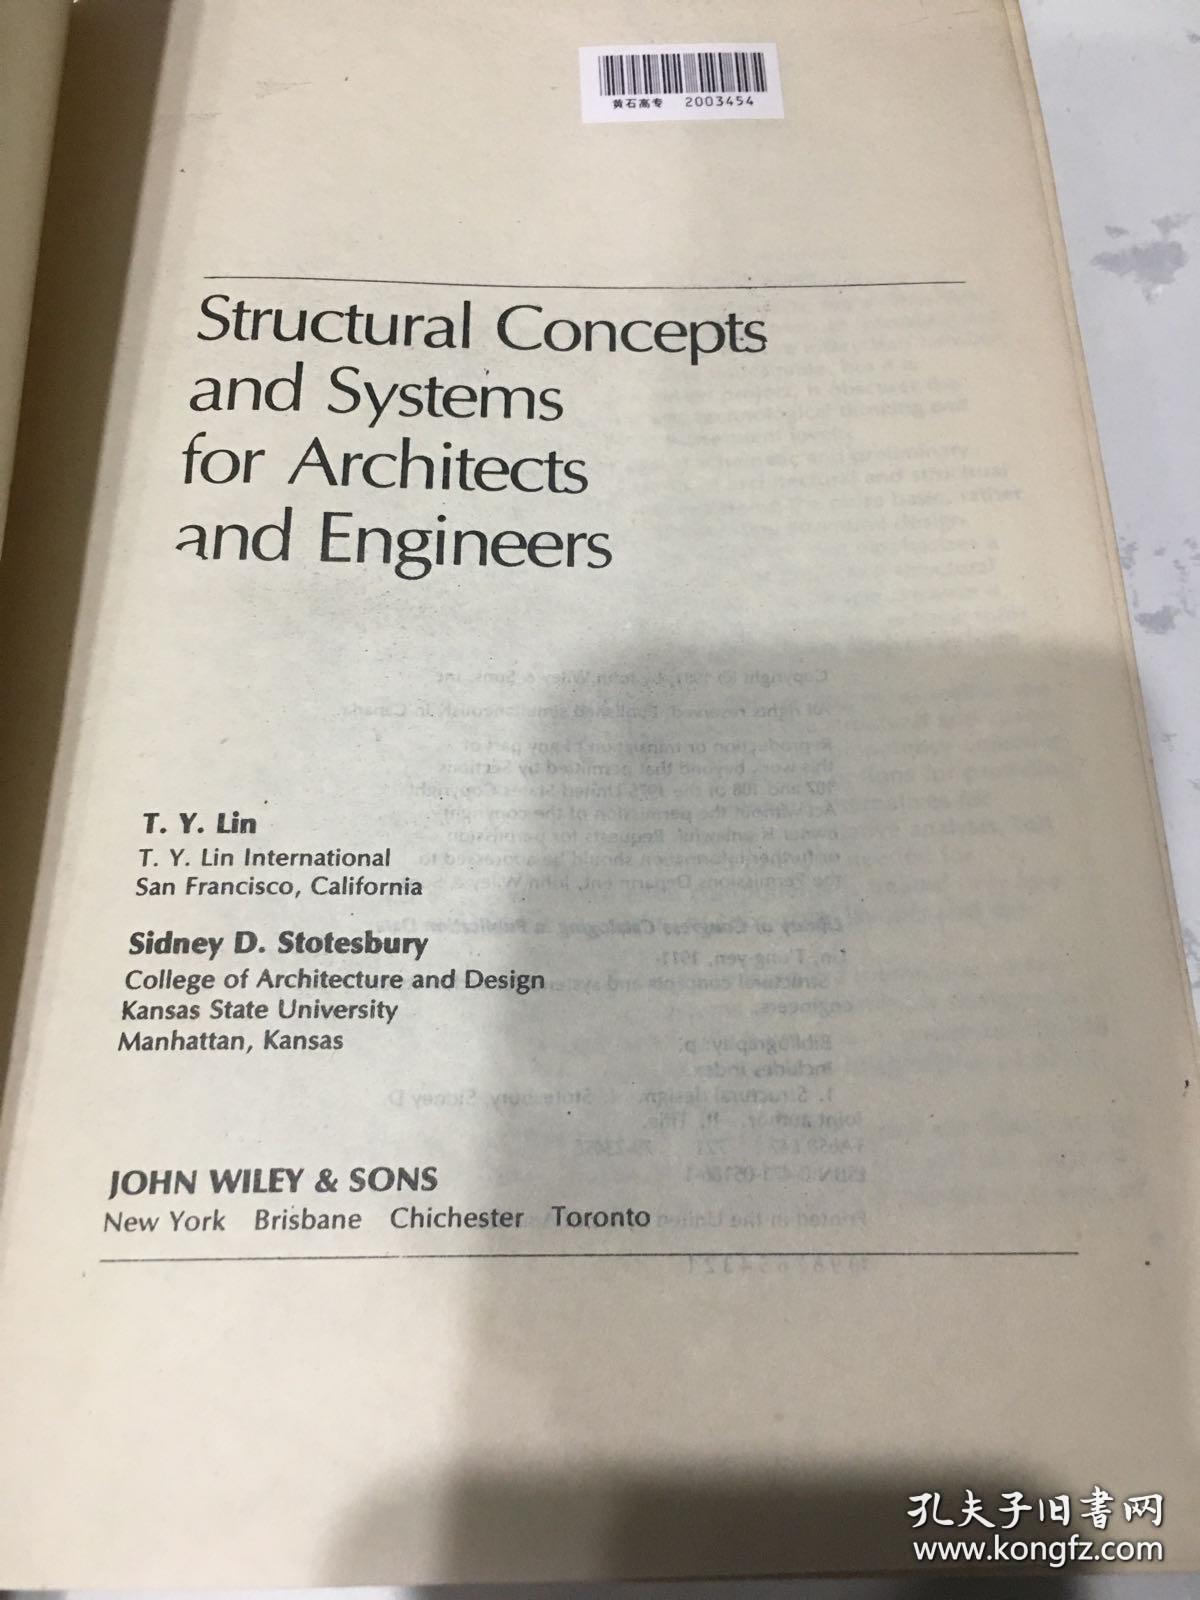 建筑师与工程师的结构概念和体系